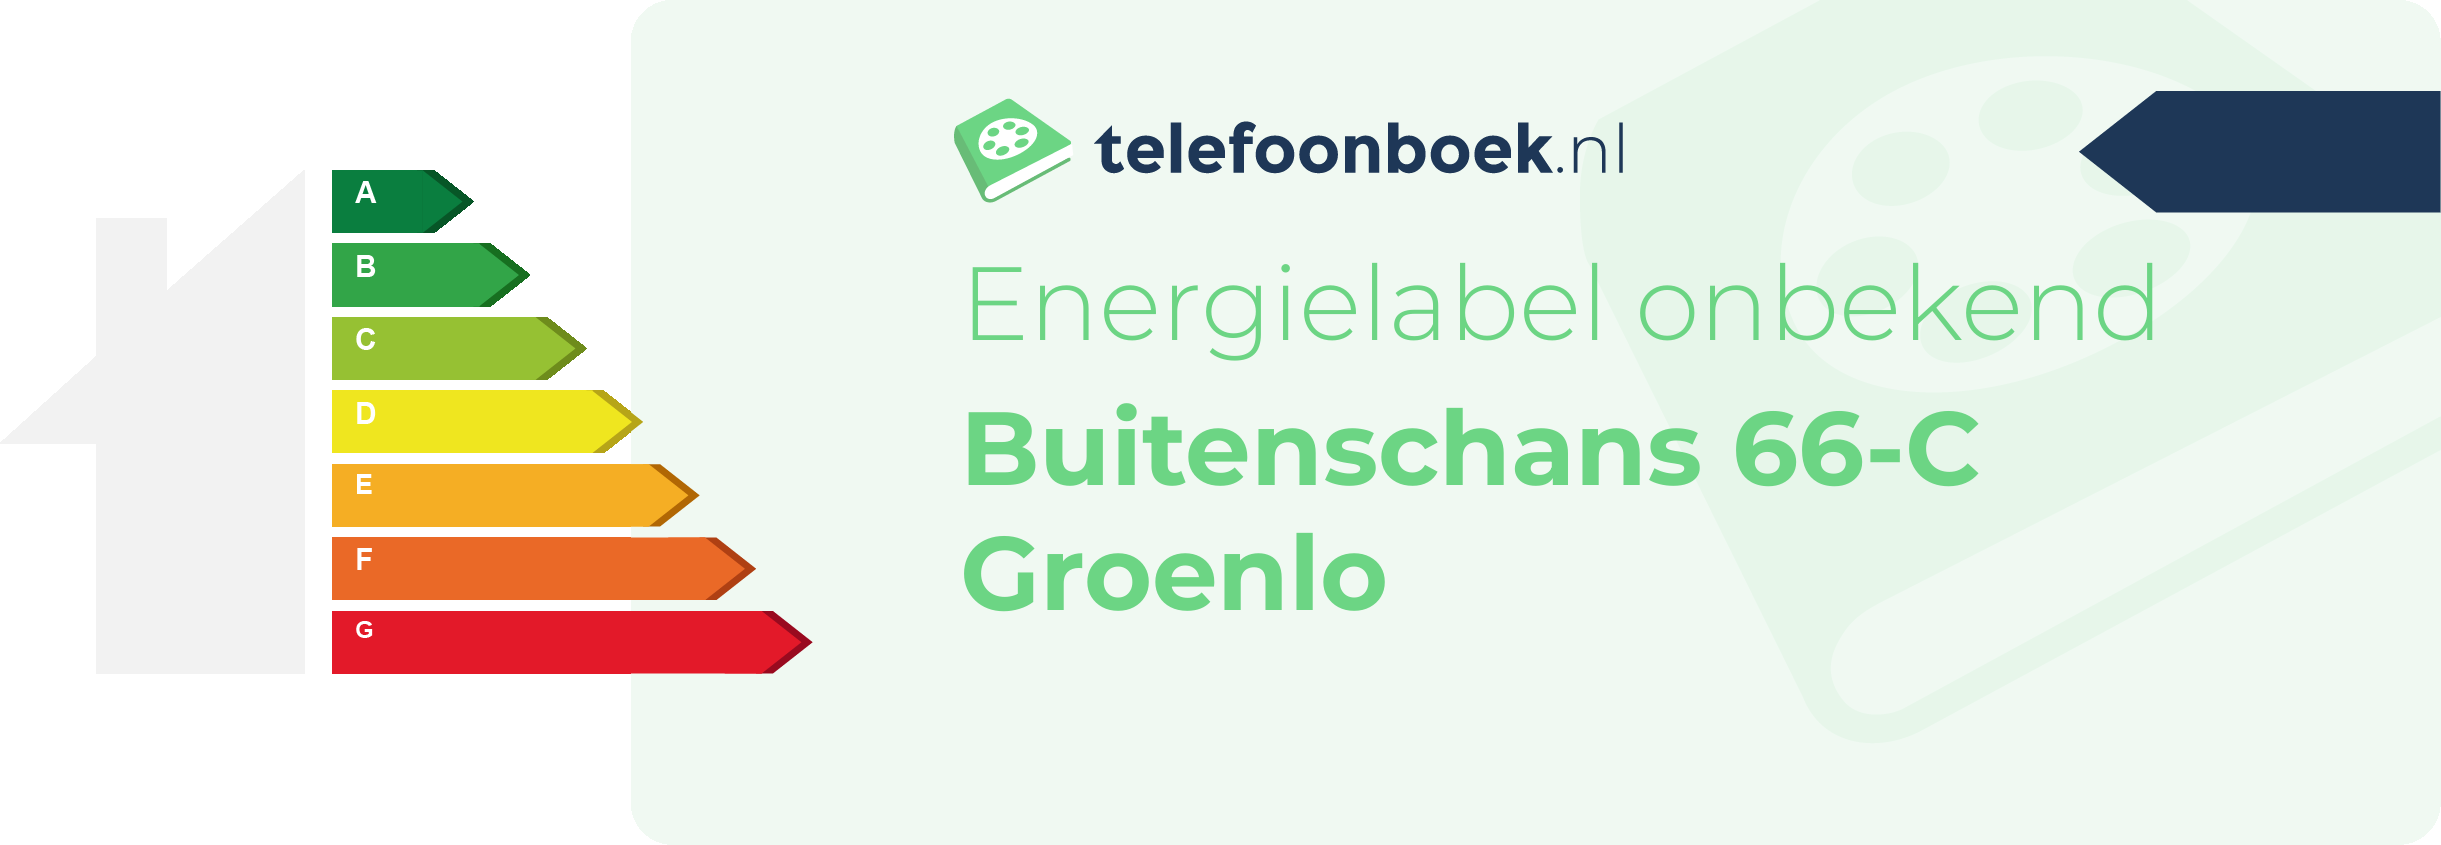 Energielabel Buitenschans 66-C Groenlo